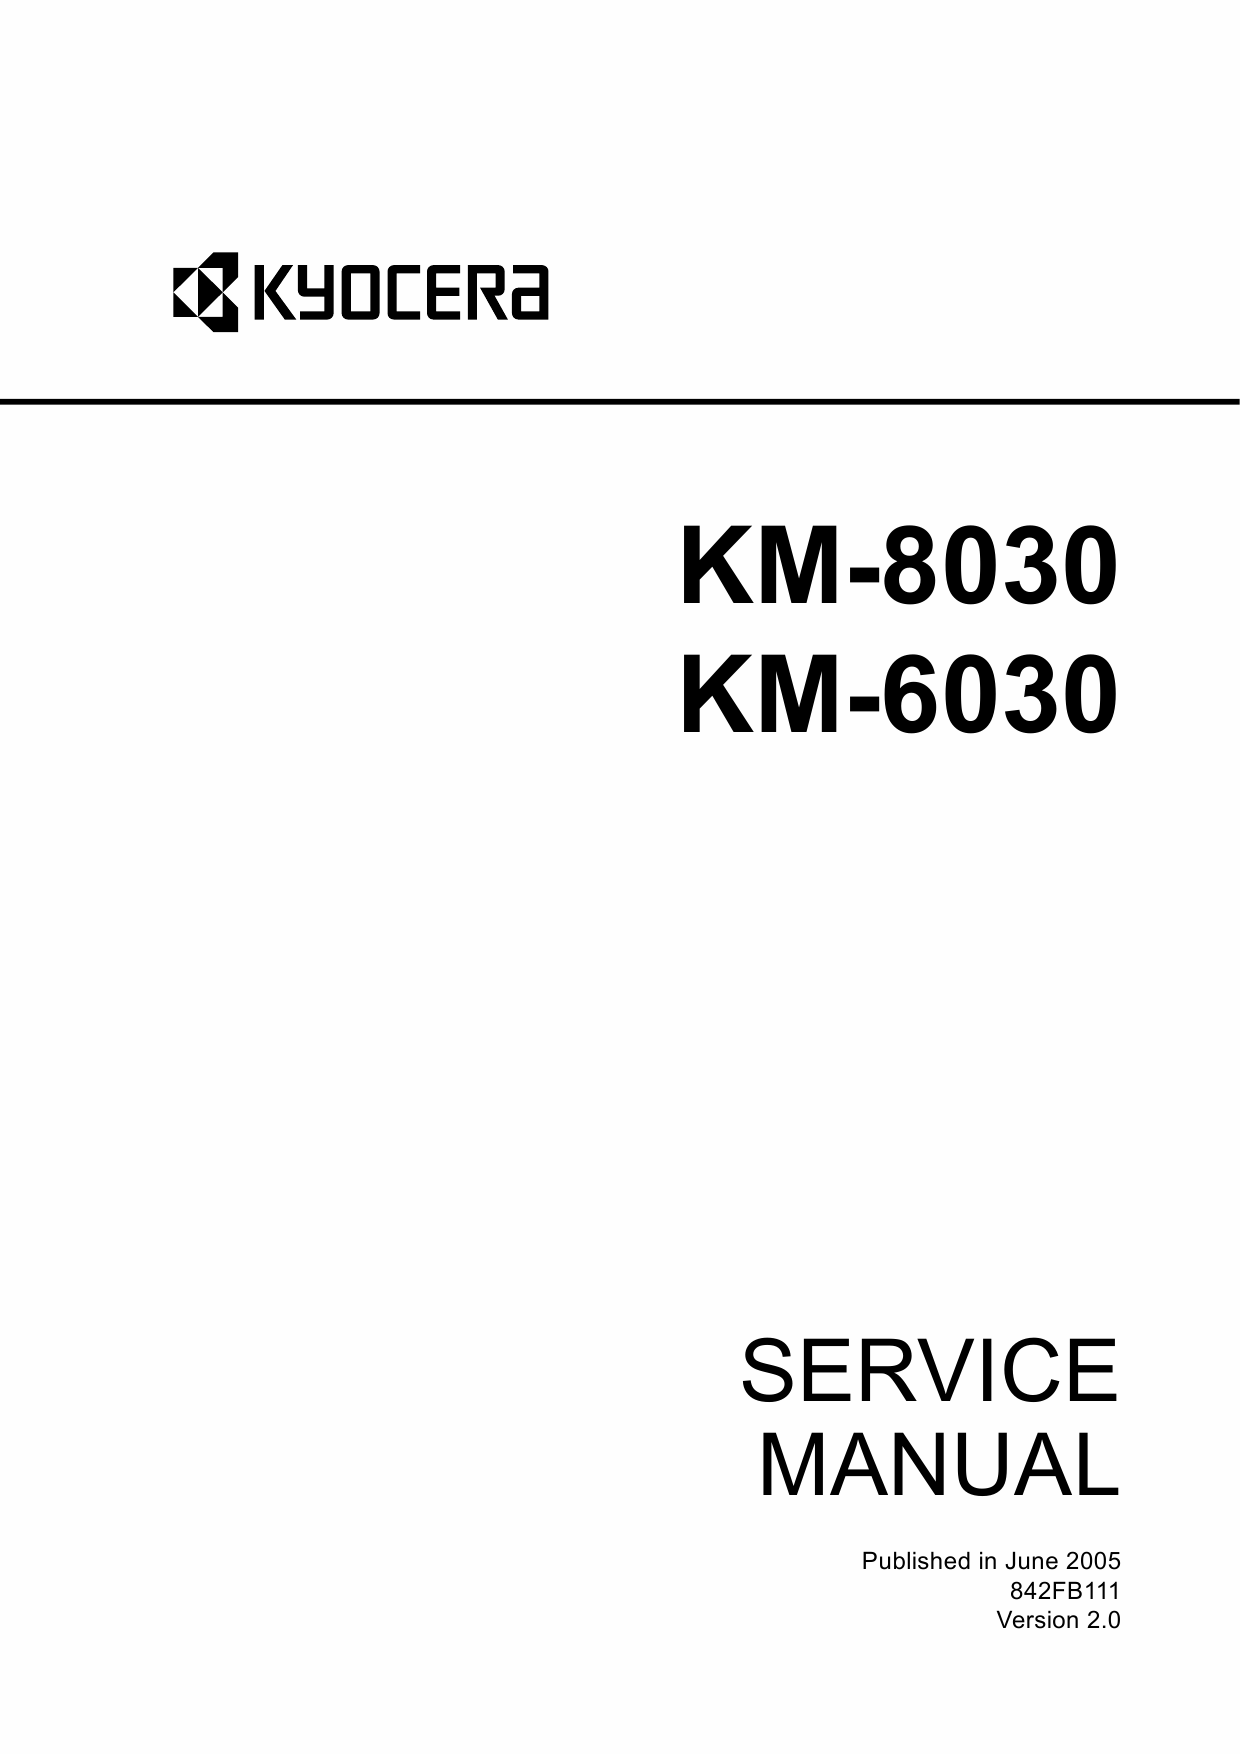 KYOCERA Copier KM-8030 6030 Service Manual-1